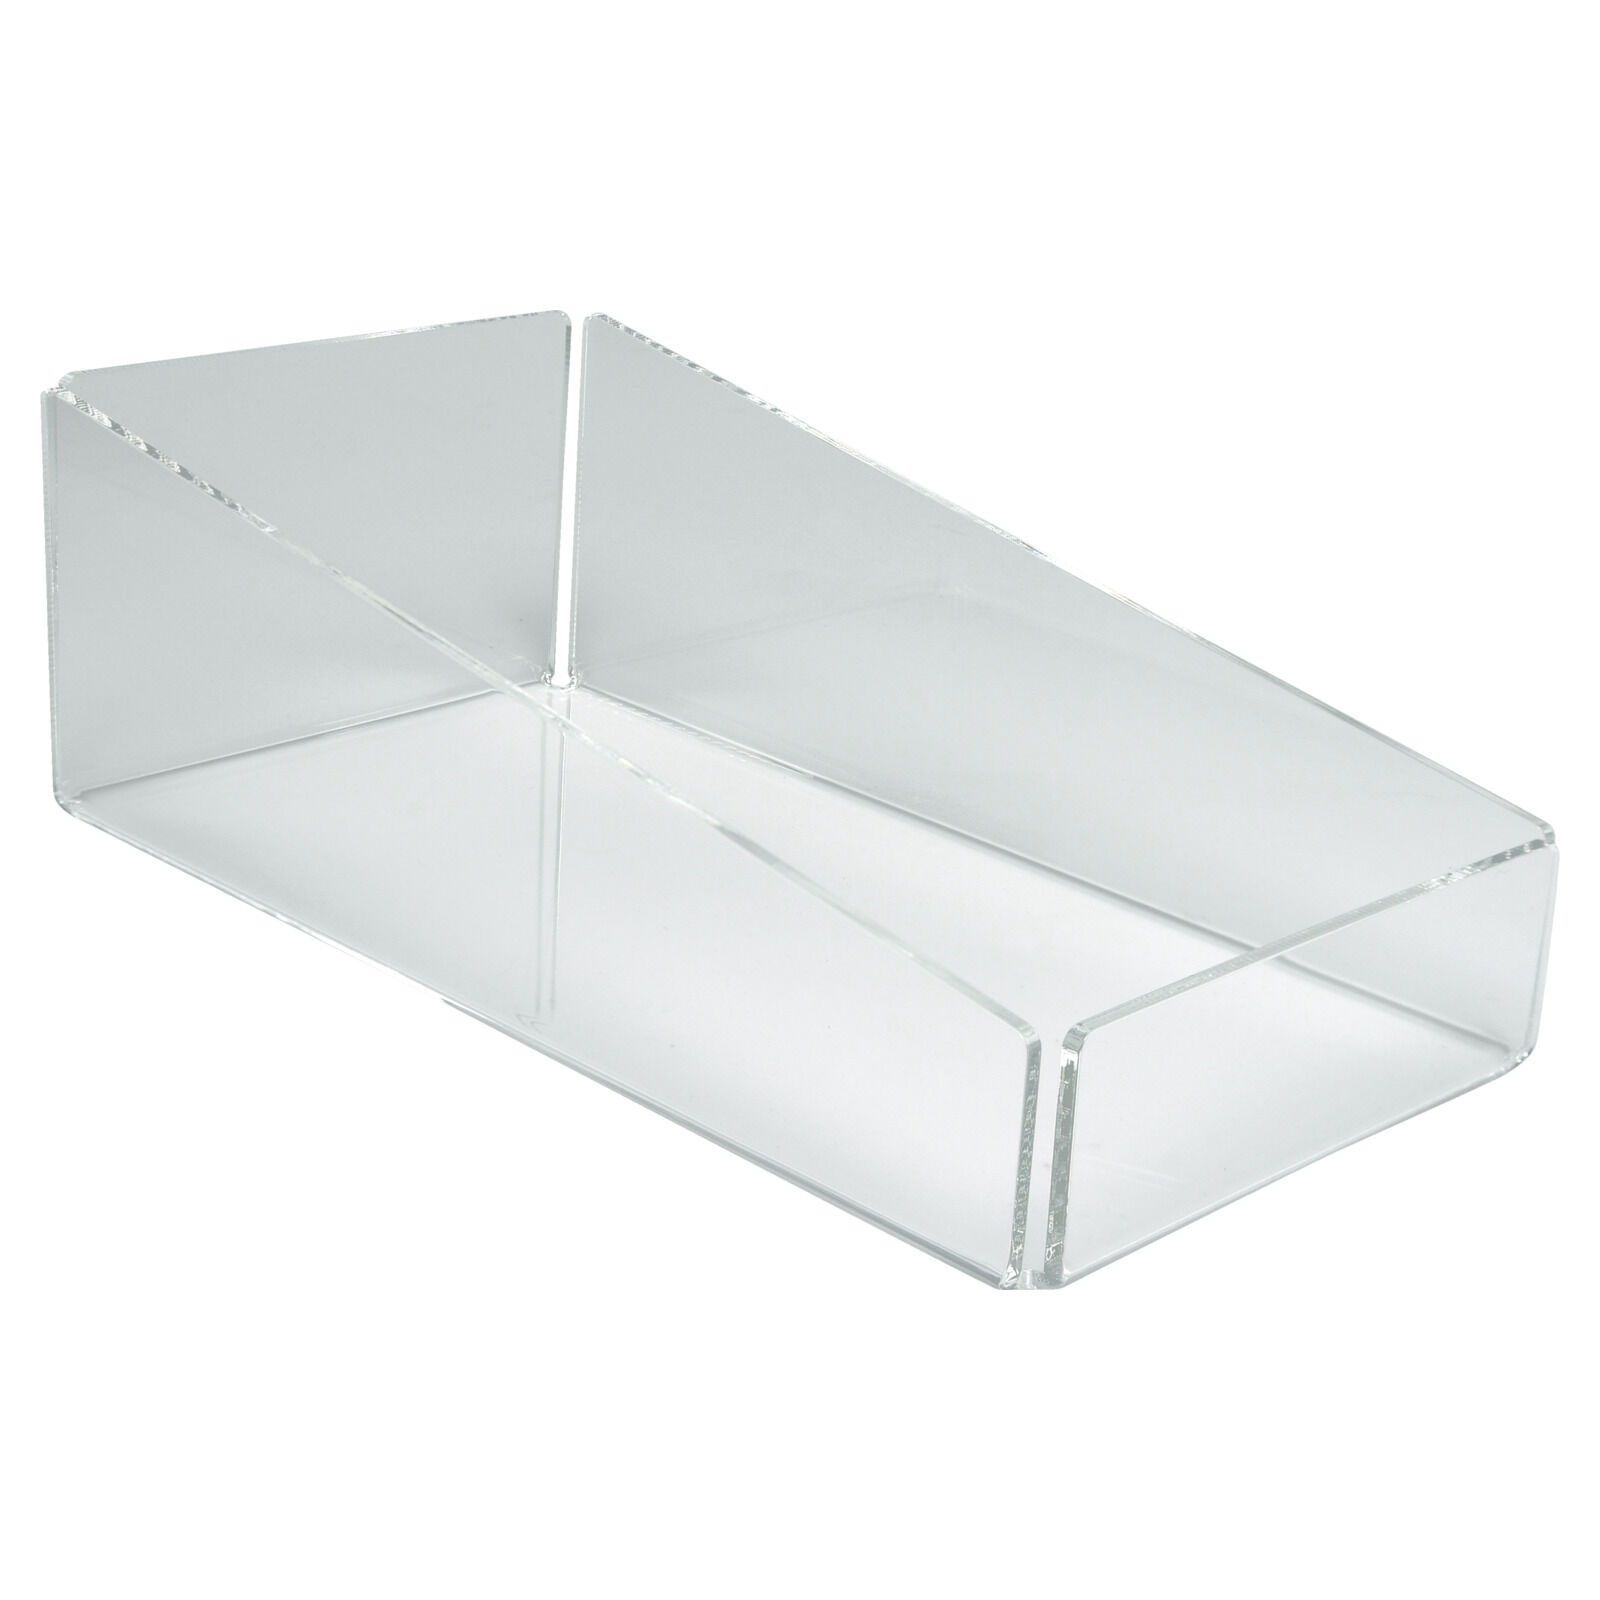 Produktbox aus Acryglas H 10,0 cm, B 16,0 cm, T 30,0 cm